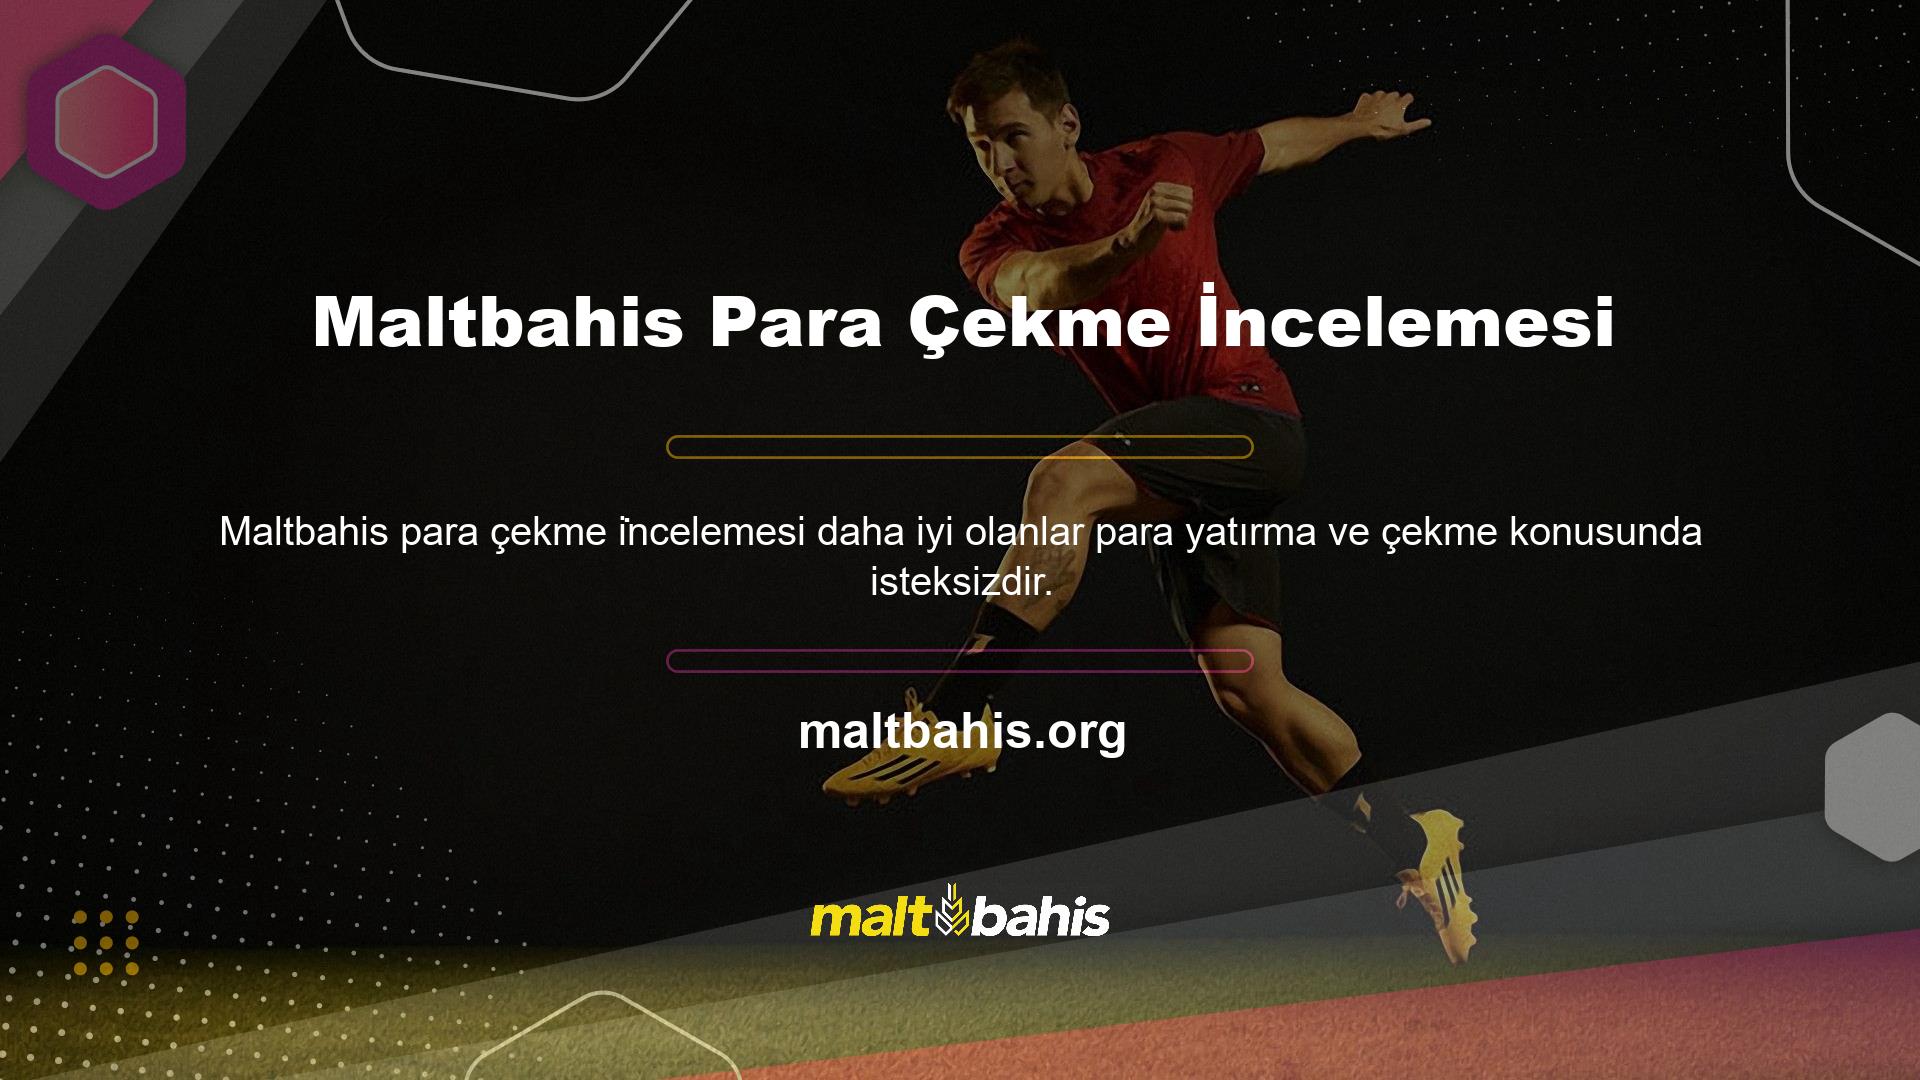 Maltbahis web sitesi de bunun bilincinde olup para çekme sürecini özen ve hassasiyetle ele almaktadır